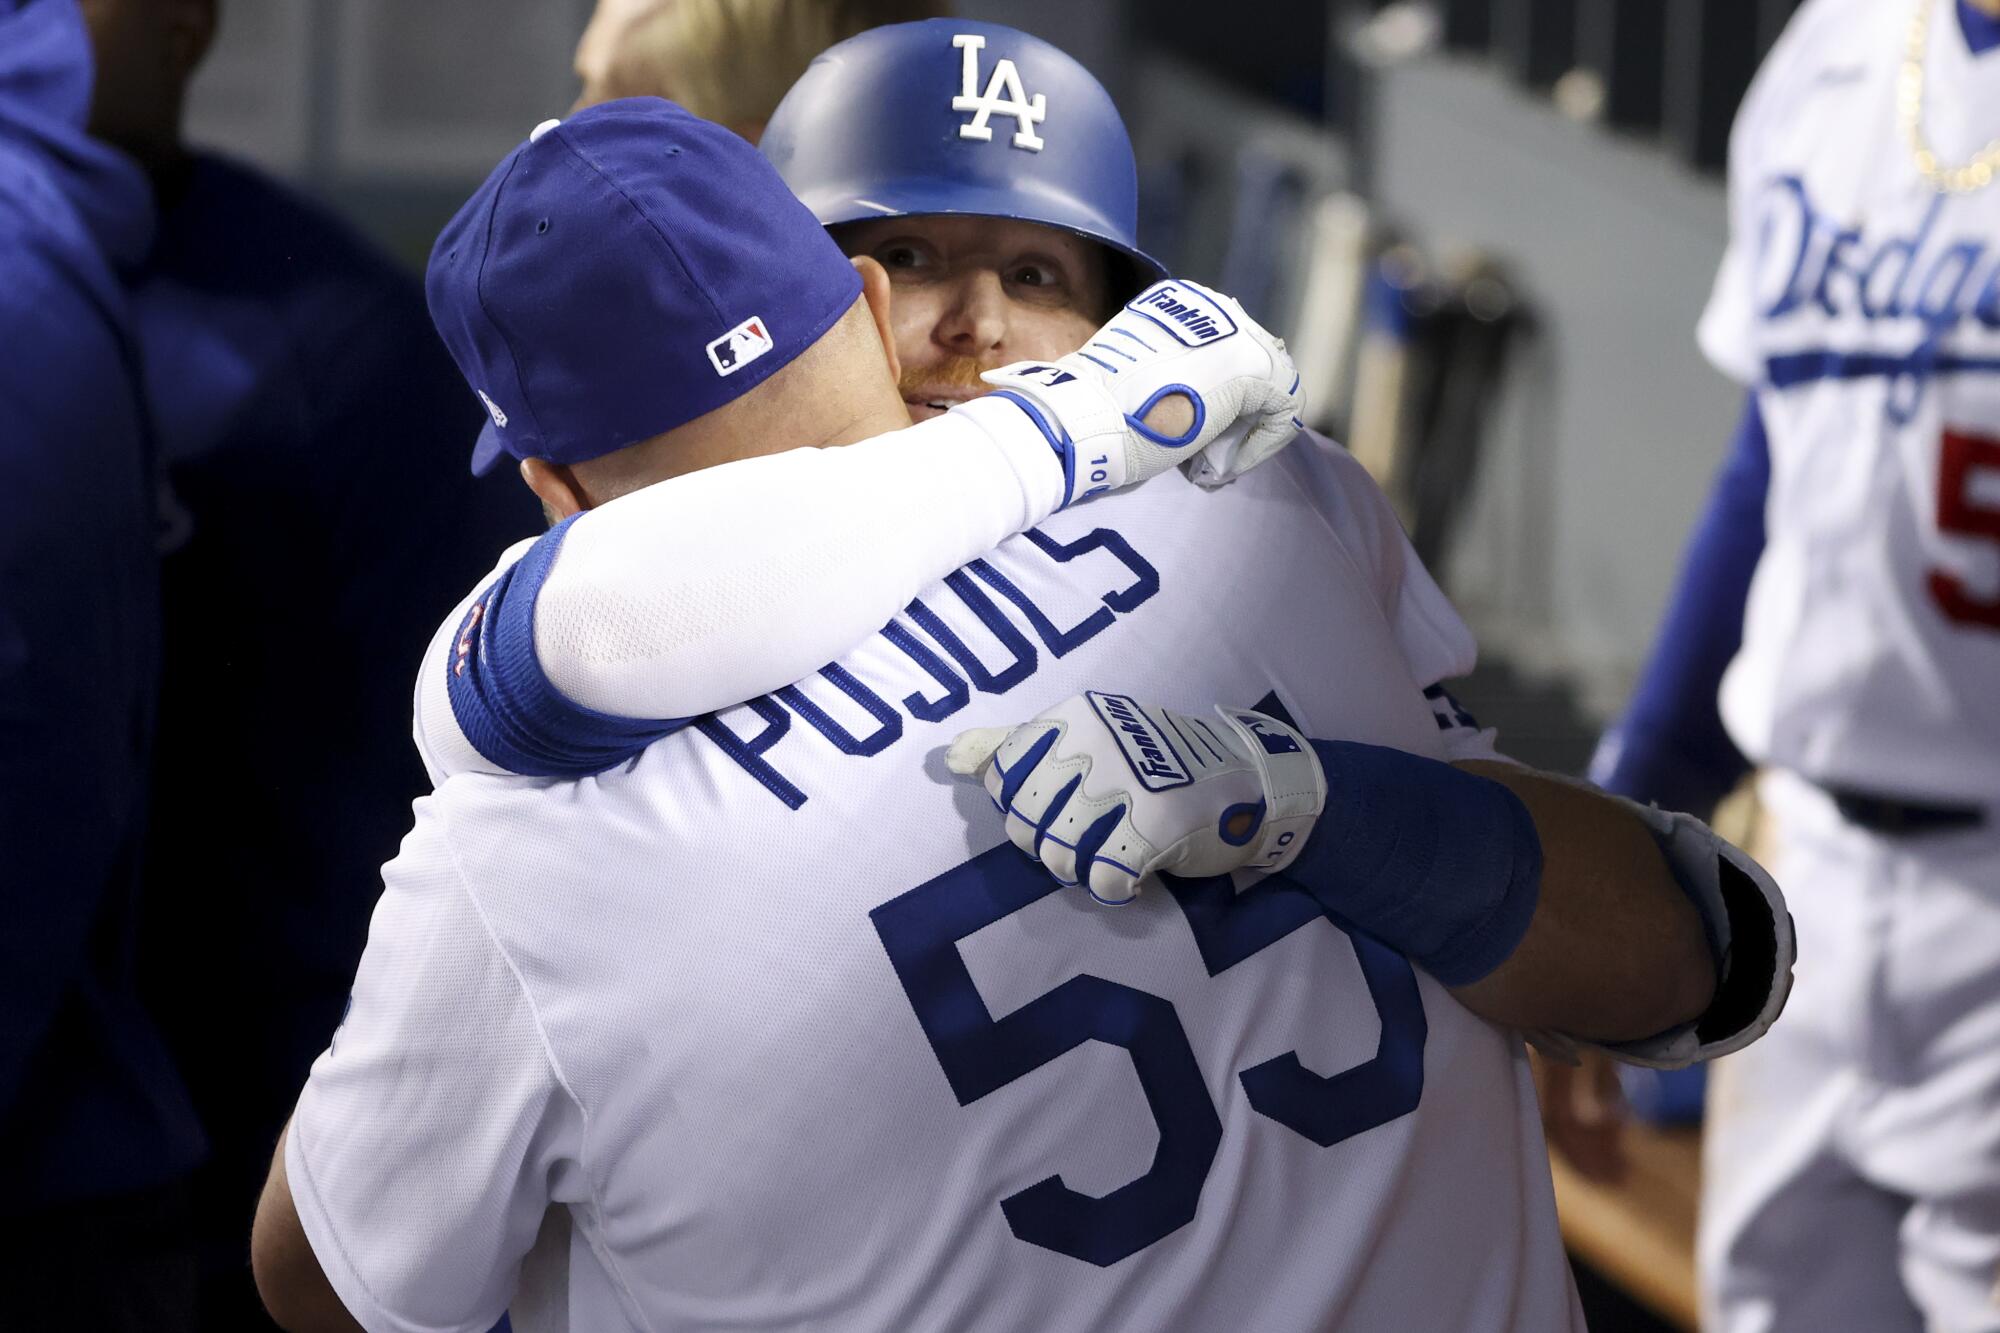 Albert Pujols' homer in return to St. Louis helps Dodgers win